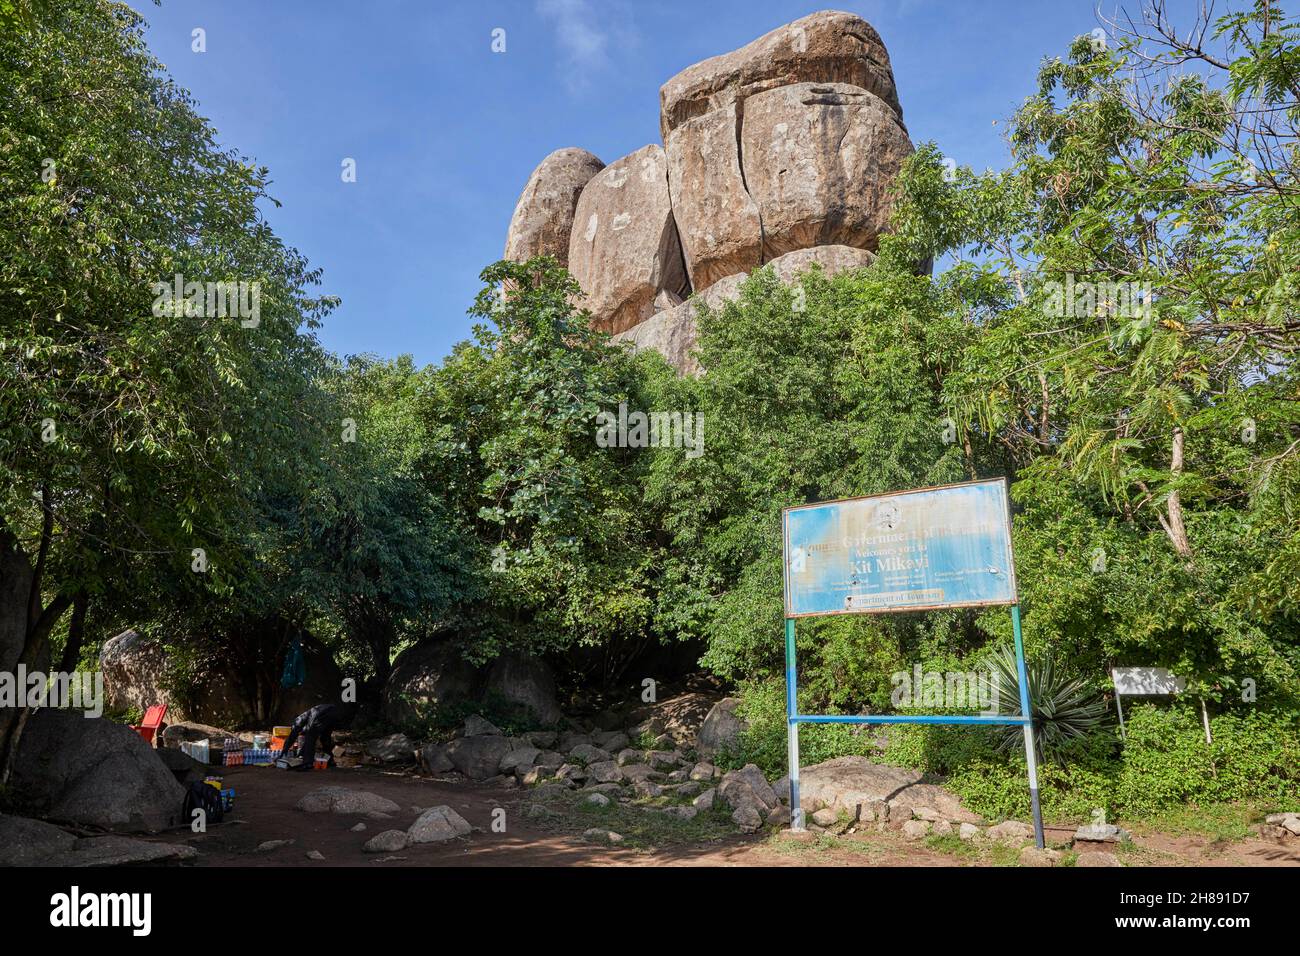 Kit Mikayi Kitmikayi Kitmikaye formación de roca en Kenia, África Foto de stock